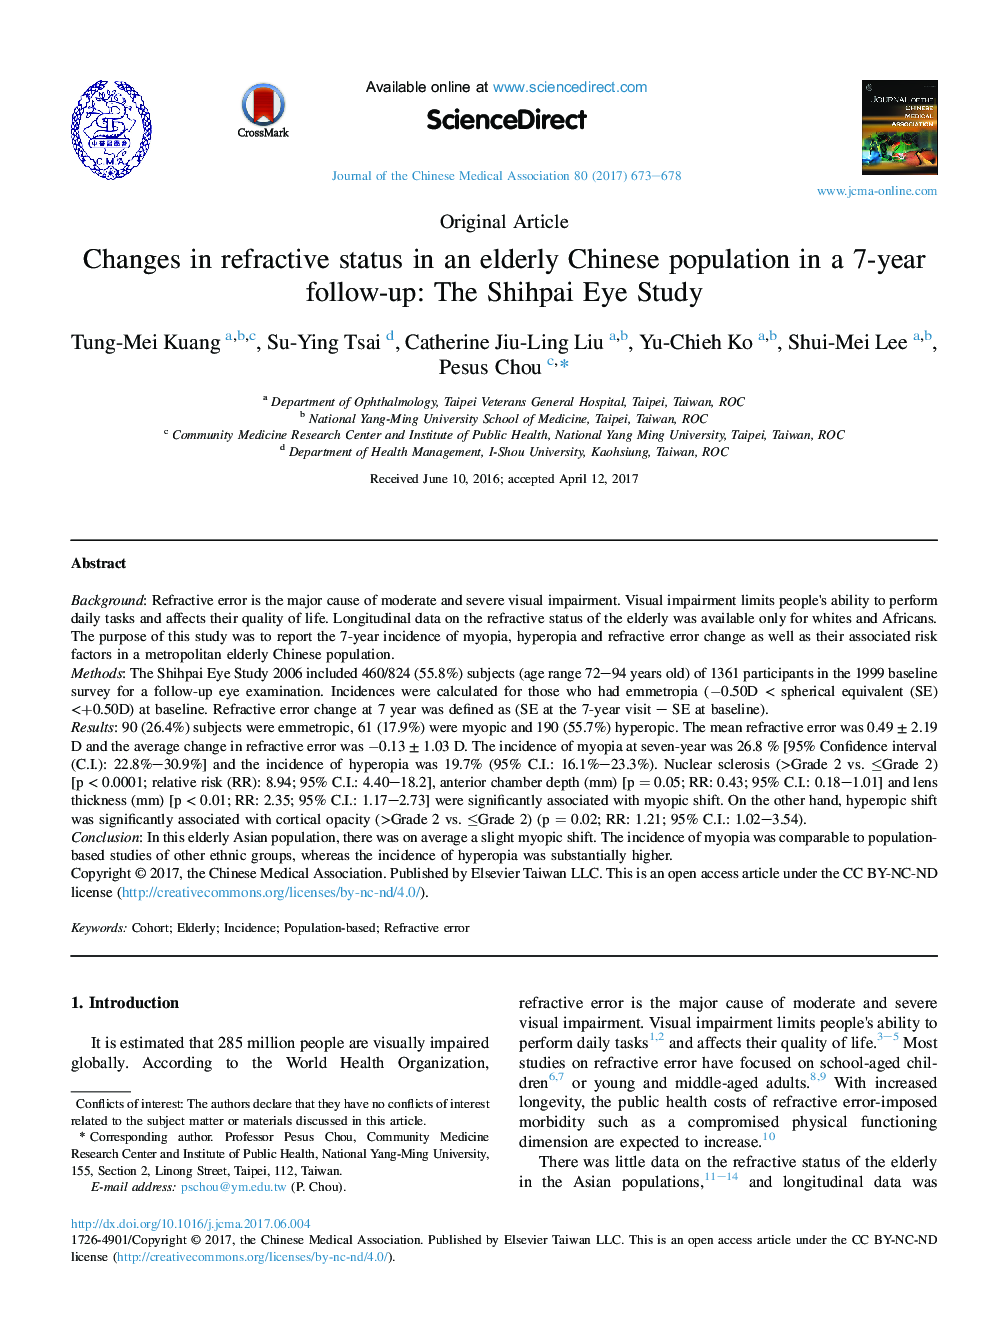 تغییرات وضعیت انکساری در یک جمعیت چینی سالخورده در پیگیری 7 ساله: مطالعه چشم شیپا 